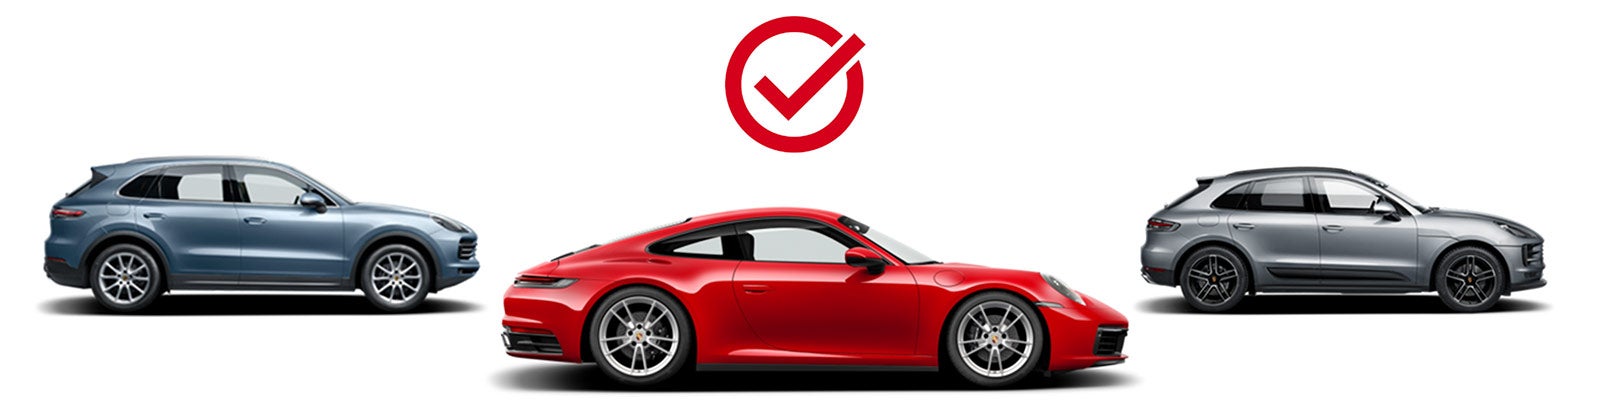 Choose Your Porsche | Porsche Cosmos Demo in Derwood MD